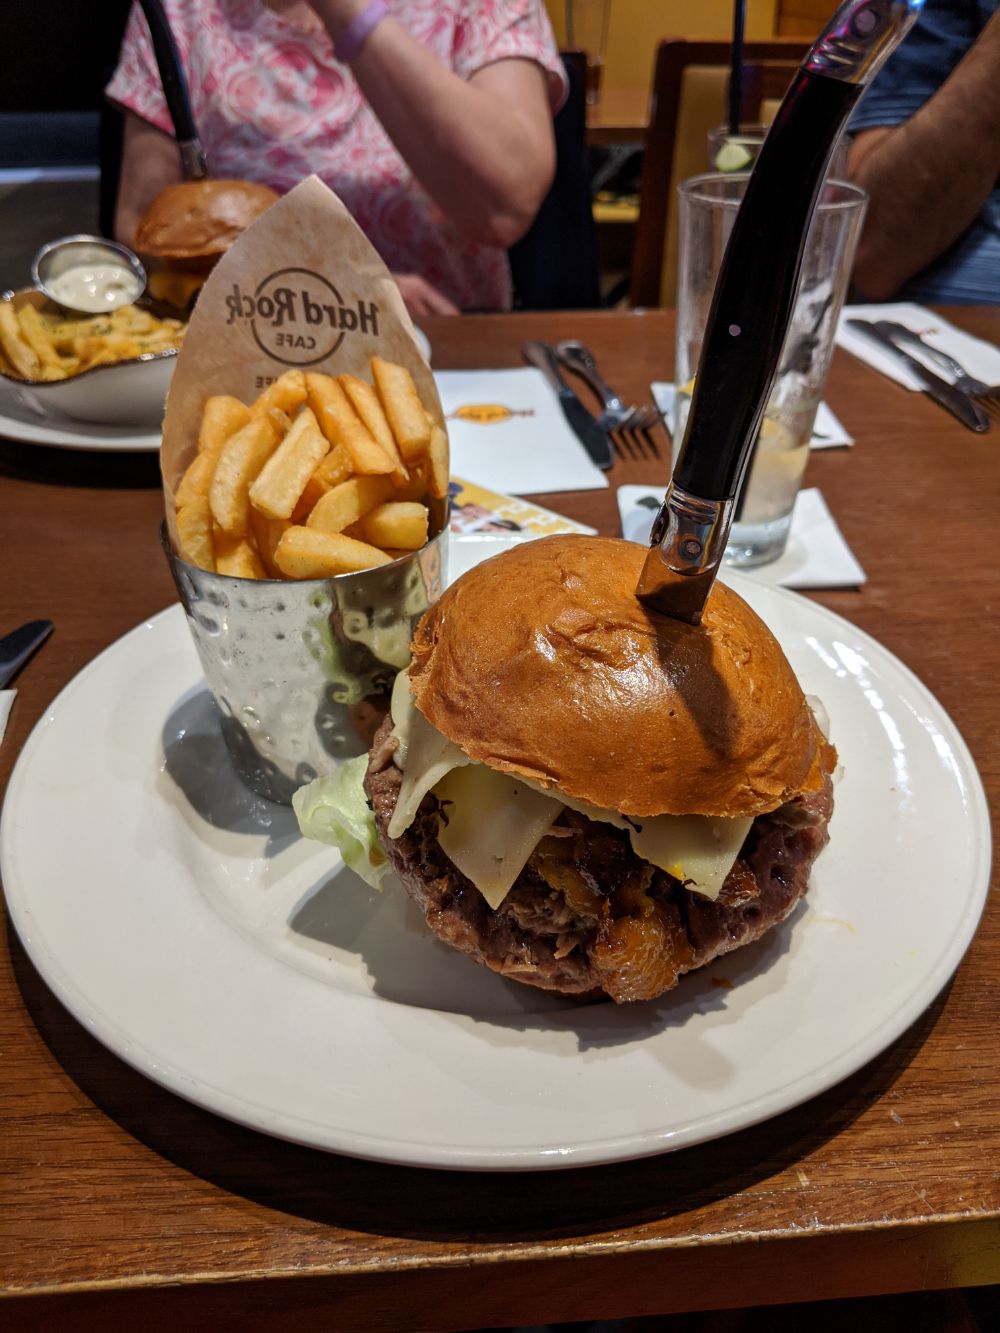 A large burger